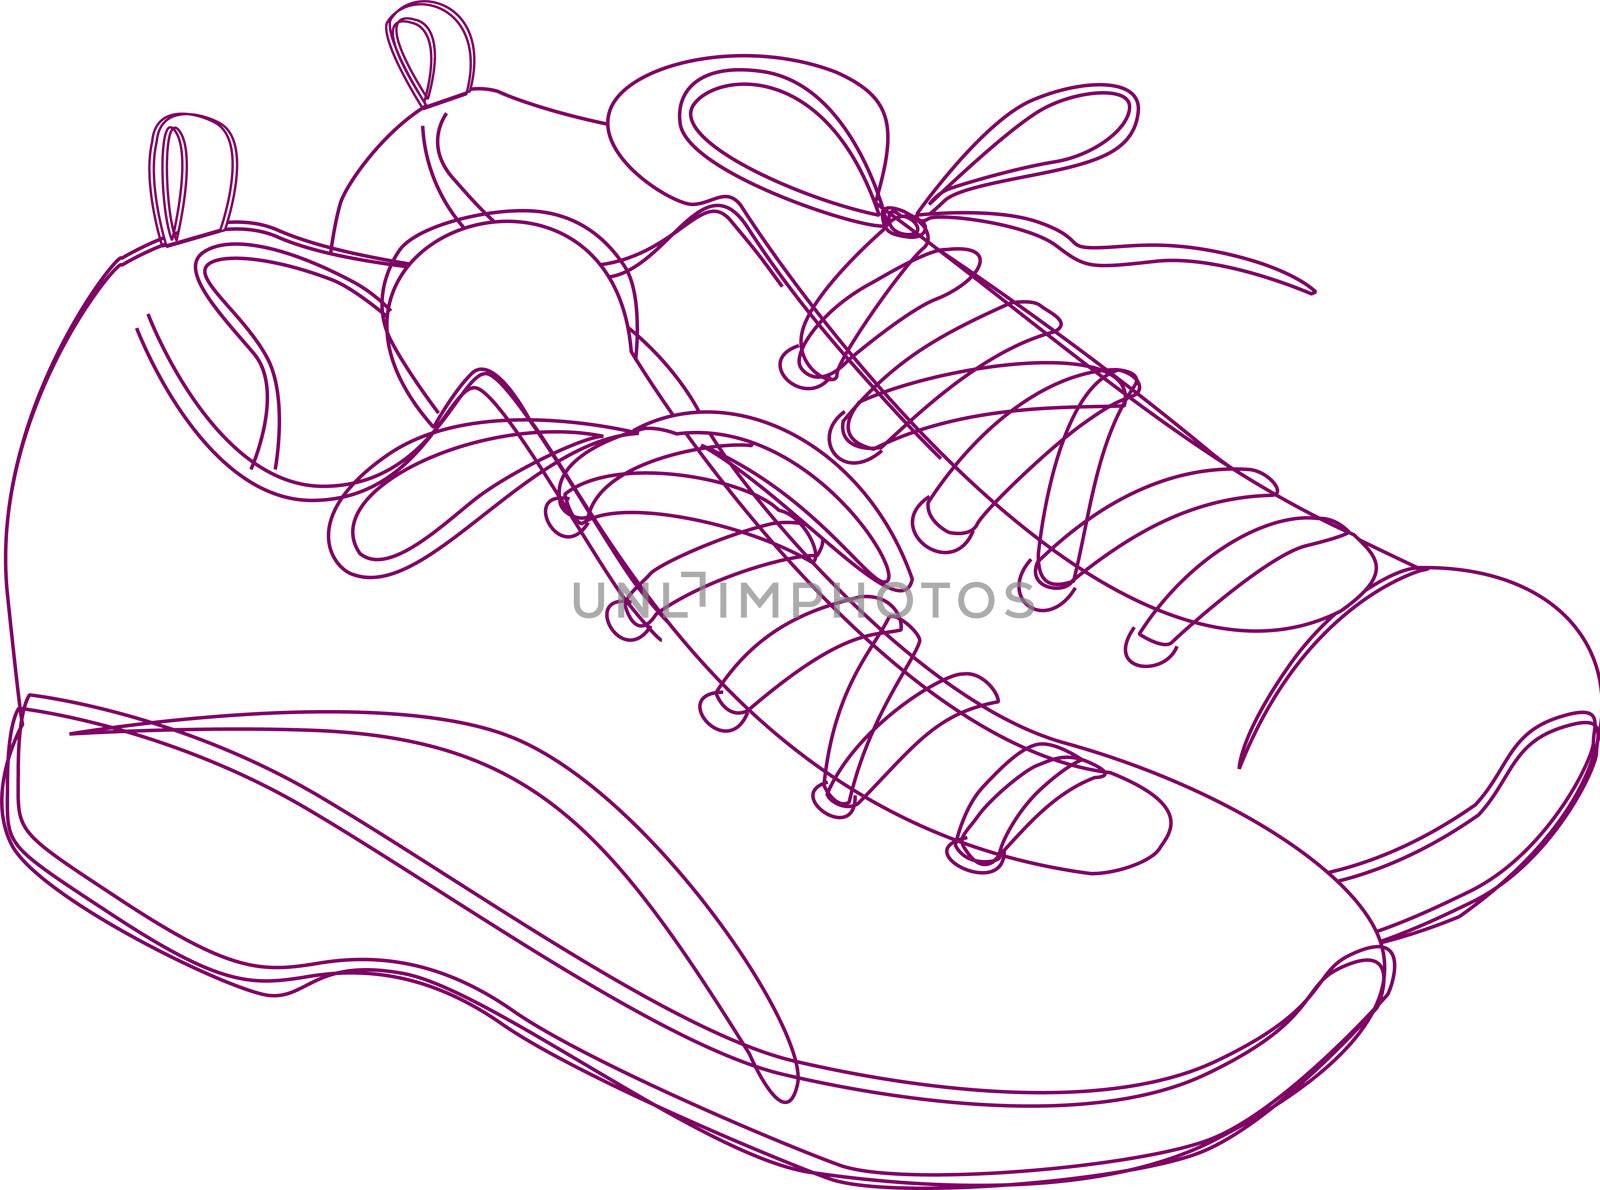 Sketching of a pair of sneakers in purple lines.